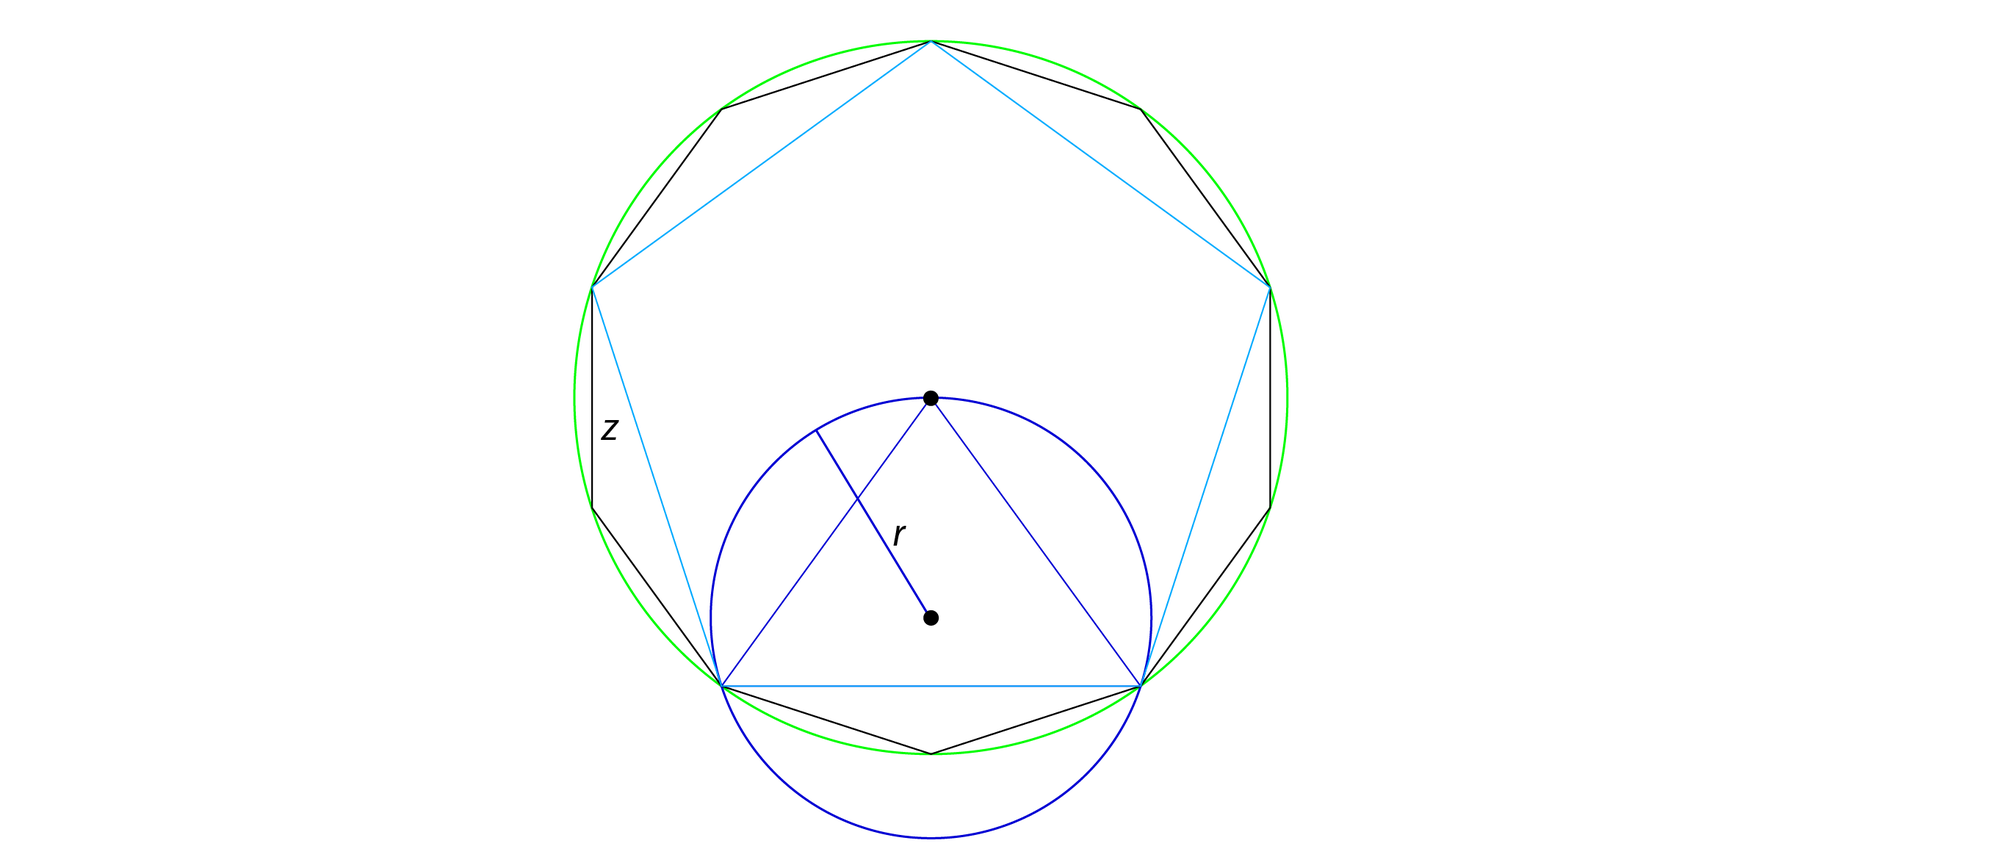 Fünfeck, Zehneck und zwei Kreise